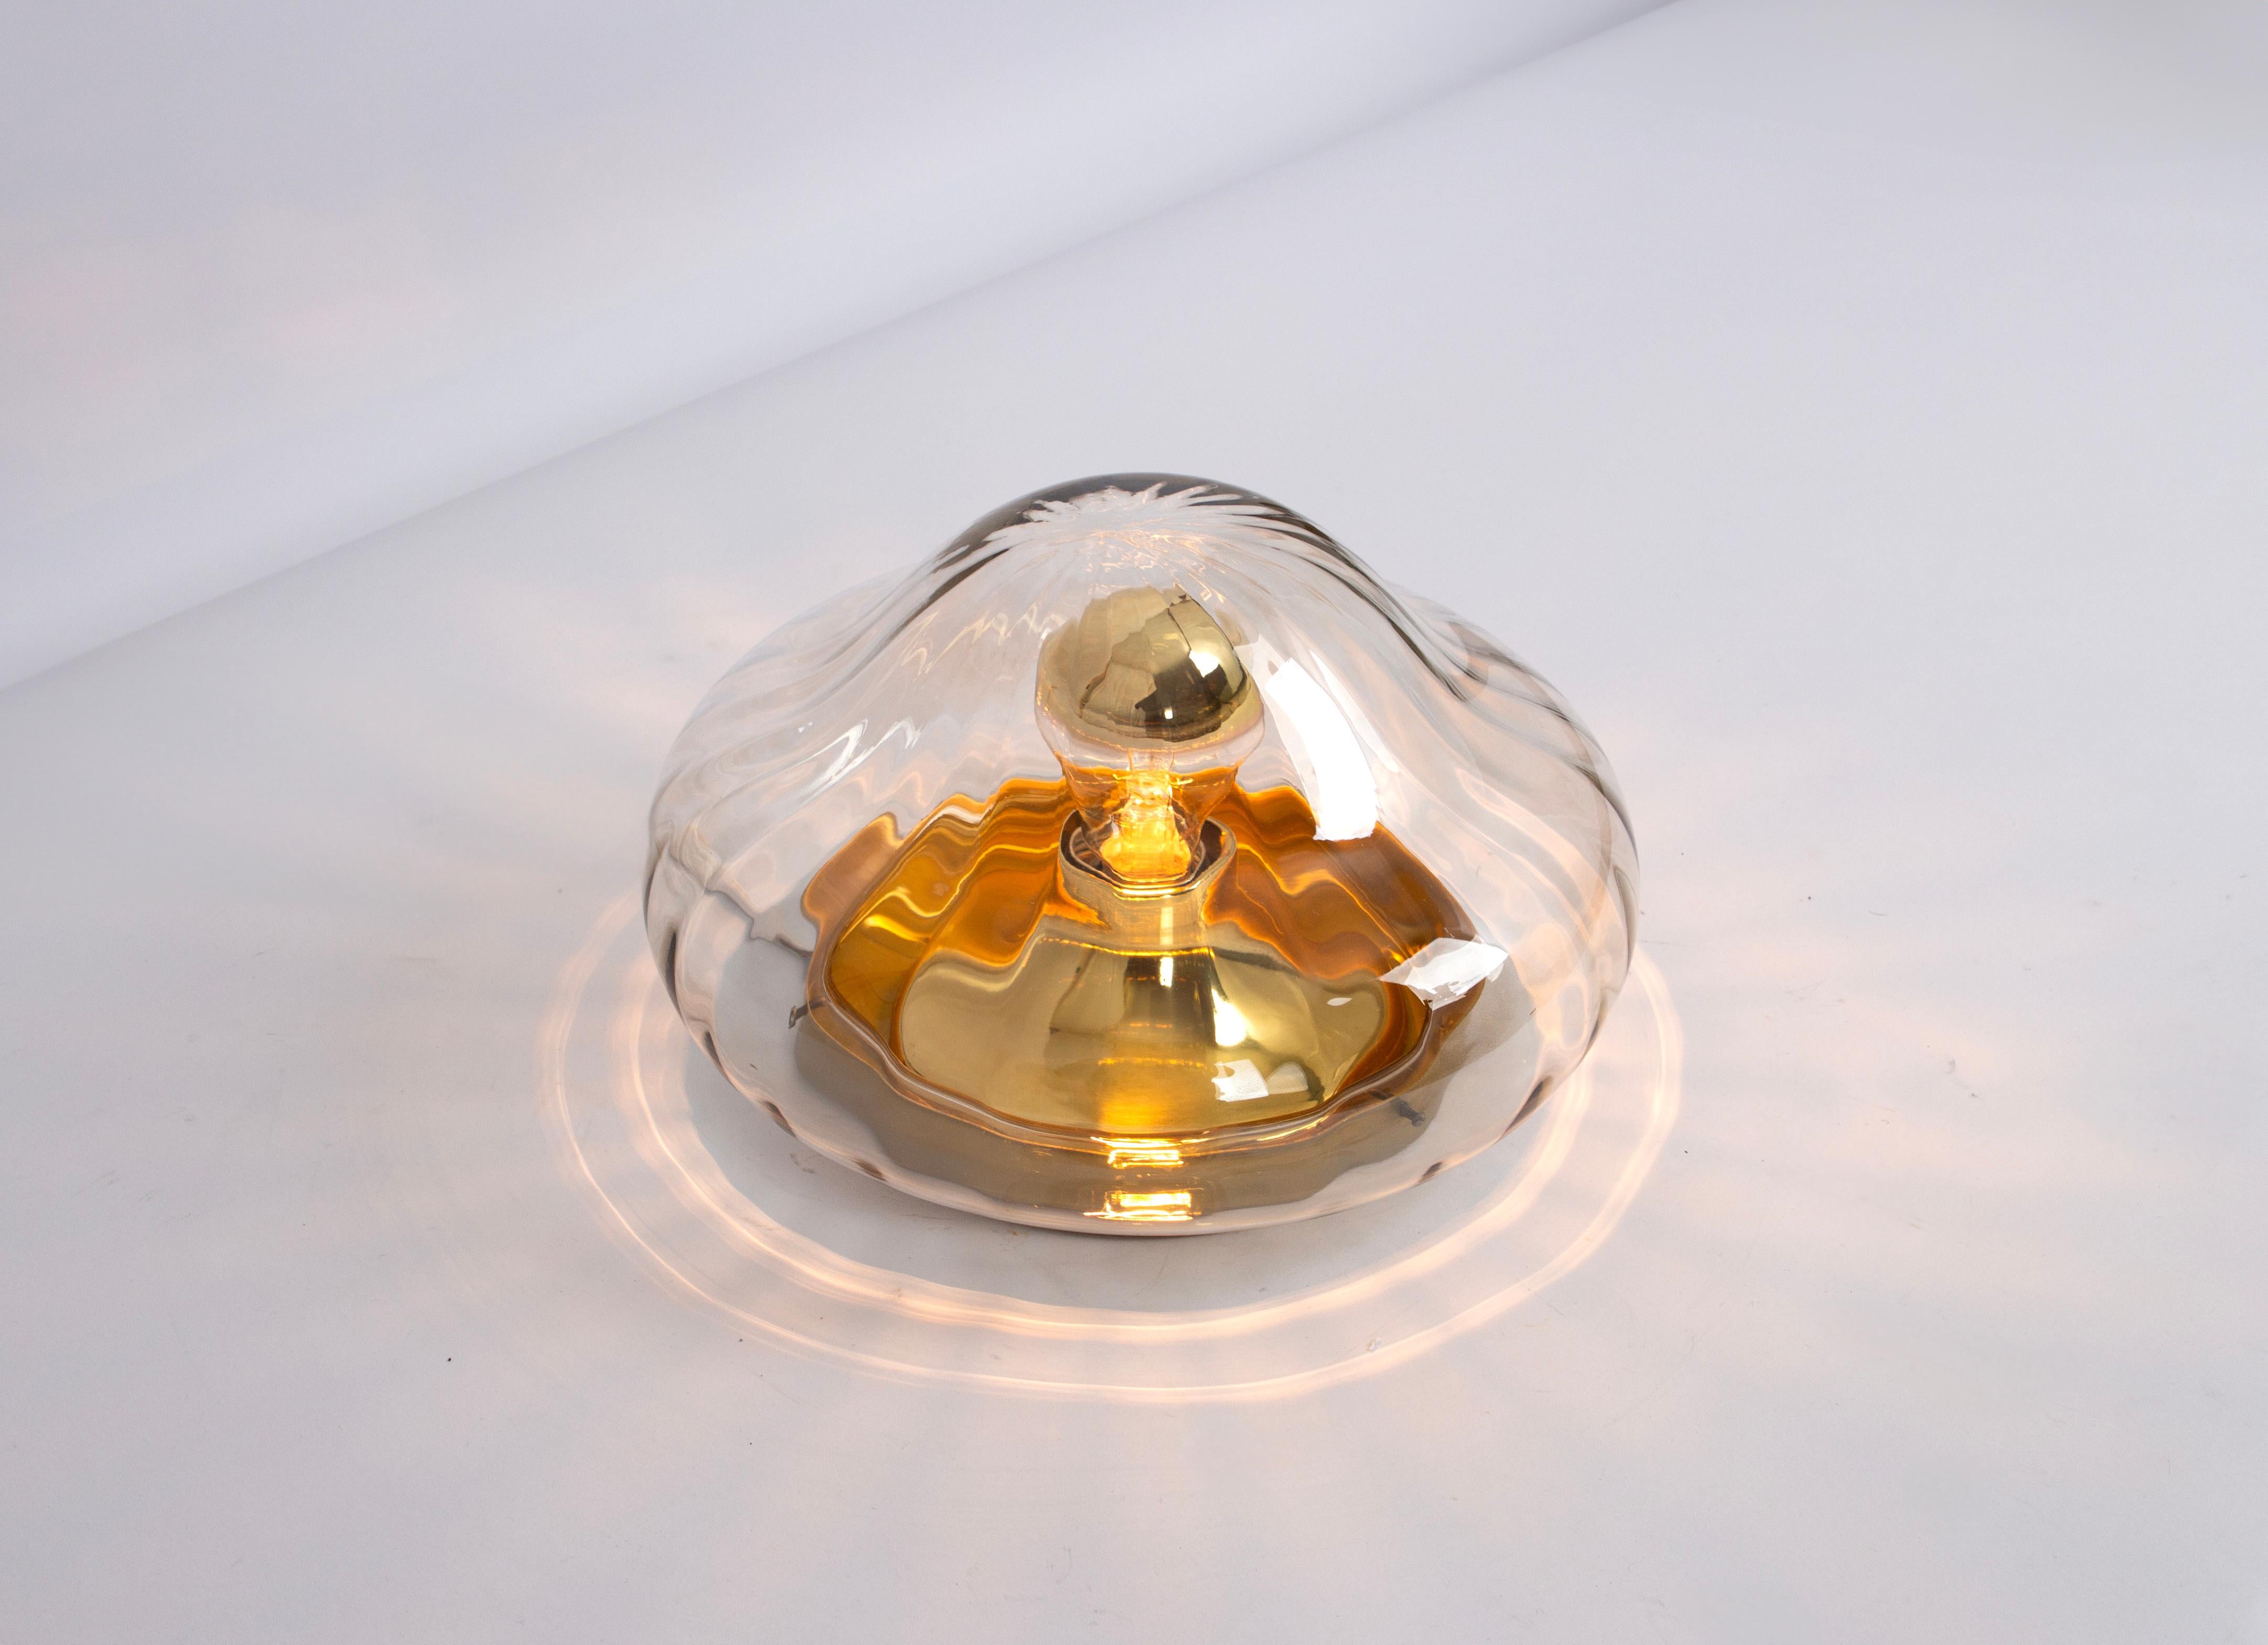 Vintage Sputnik Lampe aus den 1970er Jahren hergestellt in Deutschland, 1970er Jahre.
Diese Lampe kann sowohl als Deckenlampe als auch als Wandlampe verwendet werden.
Wunderschöne Glasform und Lichteffekt.
Fassungen: 1 x E27 Standard